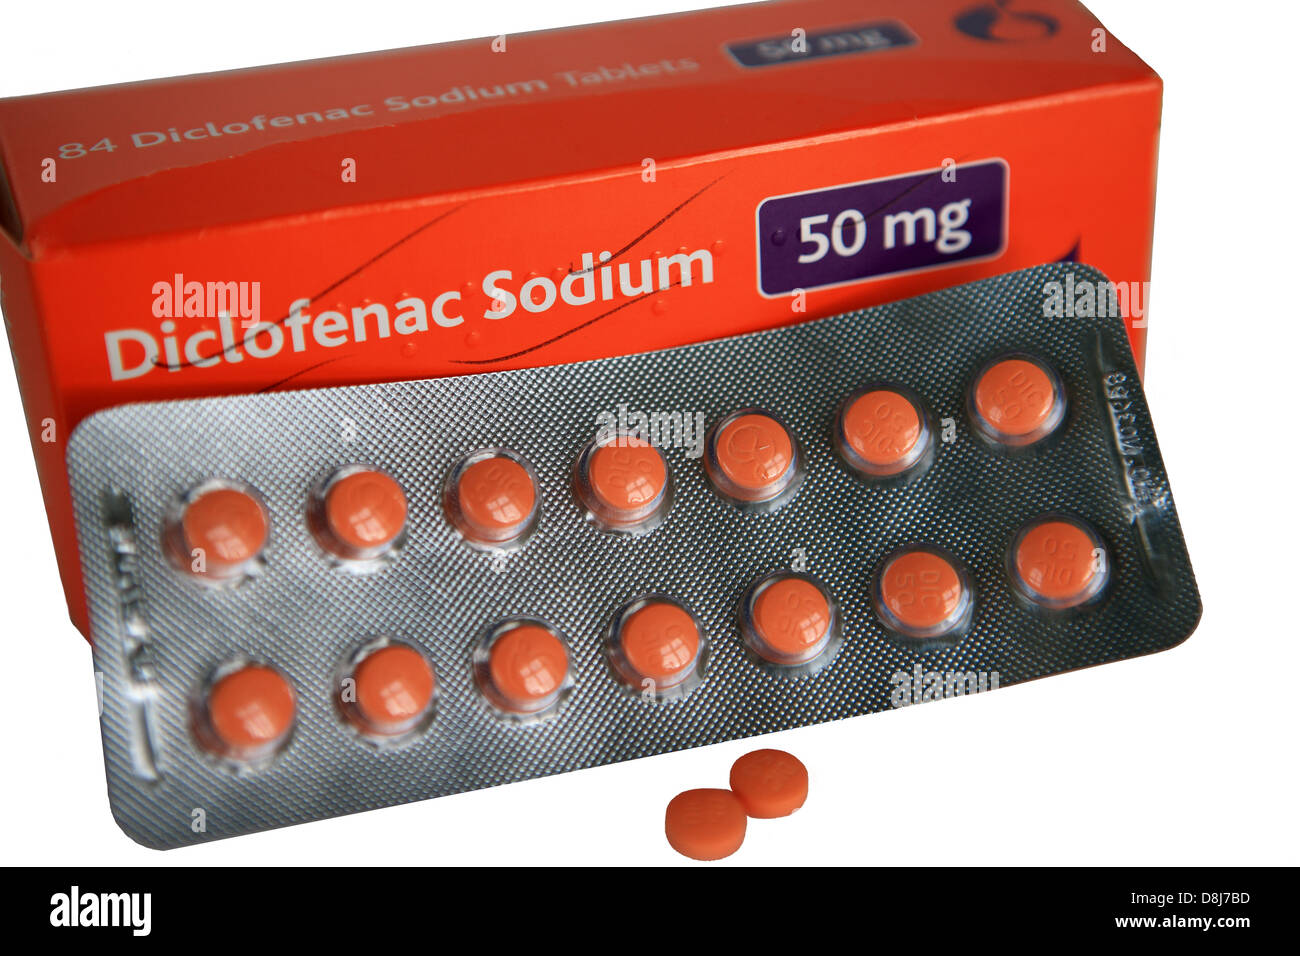 Diclofenac sodium immagini e fotografie stock ad alta risoluzione - Alamy